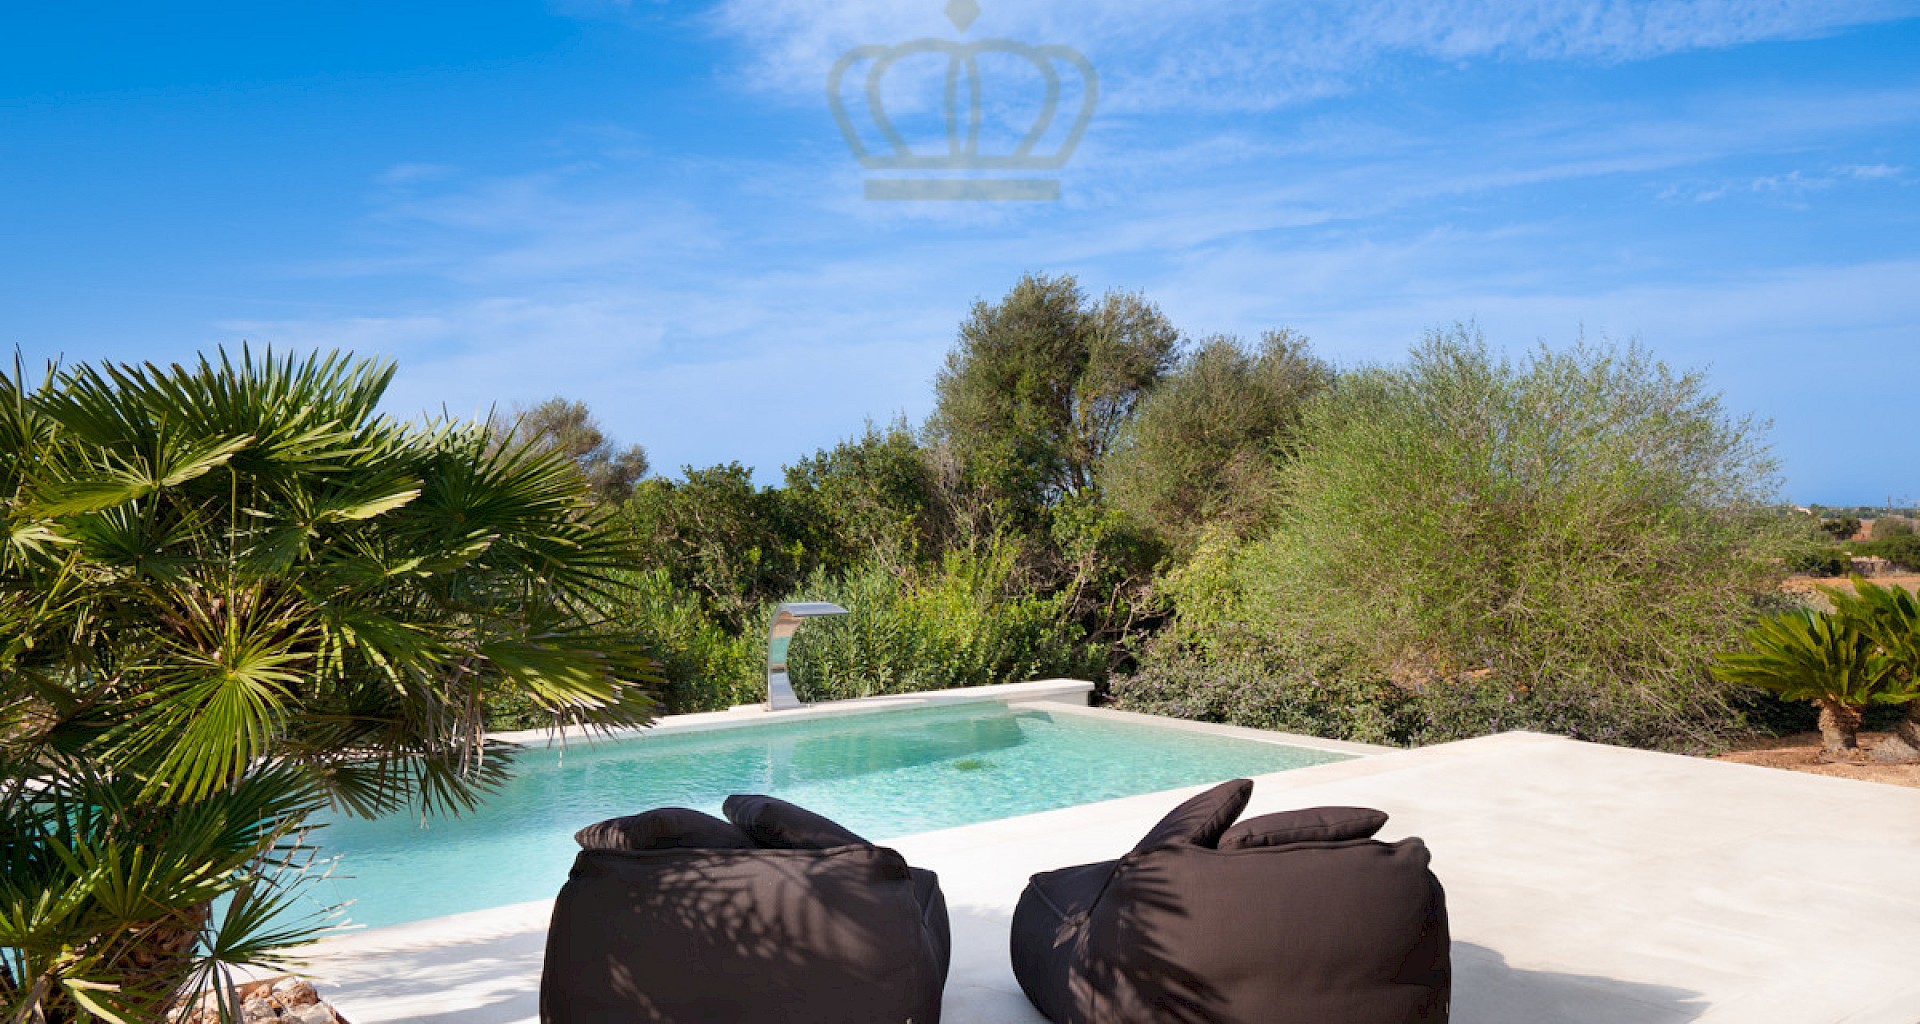 KROHN & LUEDEMANN Finca moderna en gran ubicación en Ses Salines Mallorca con piscina en gran paisaje ROMERO_web.1